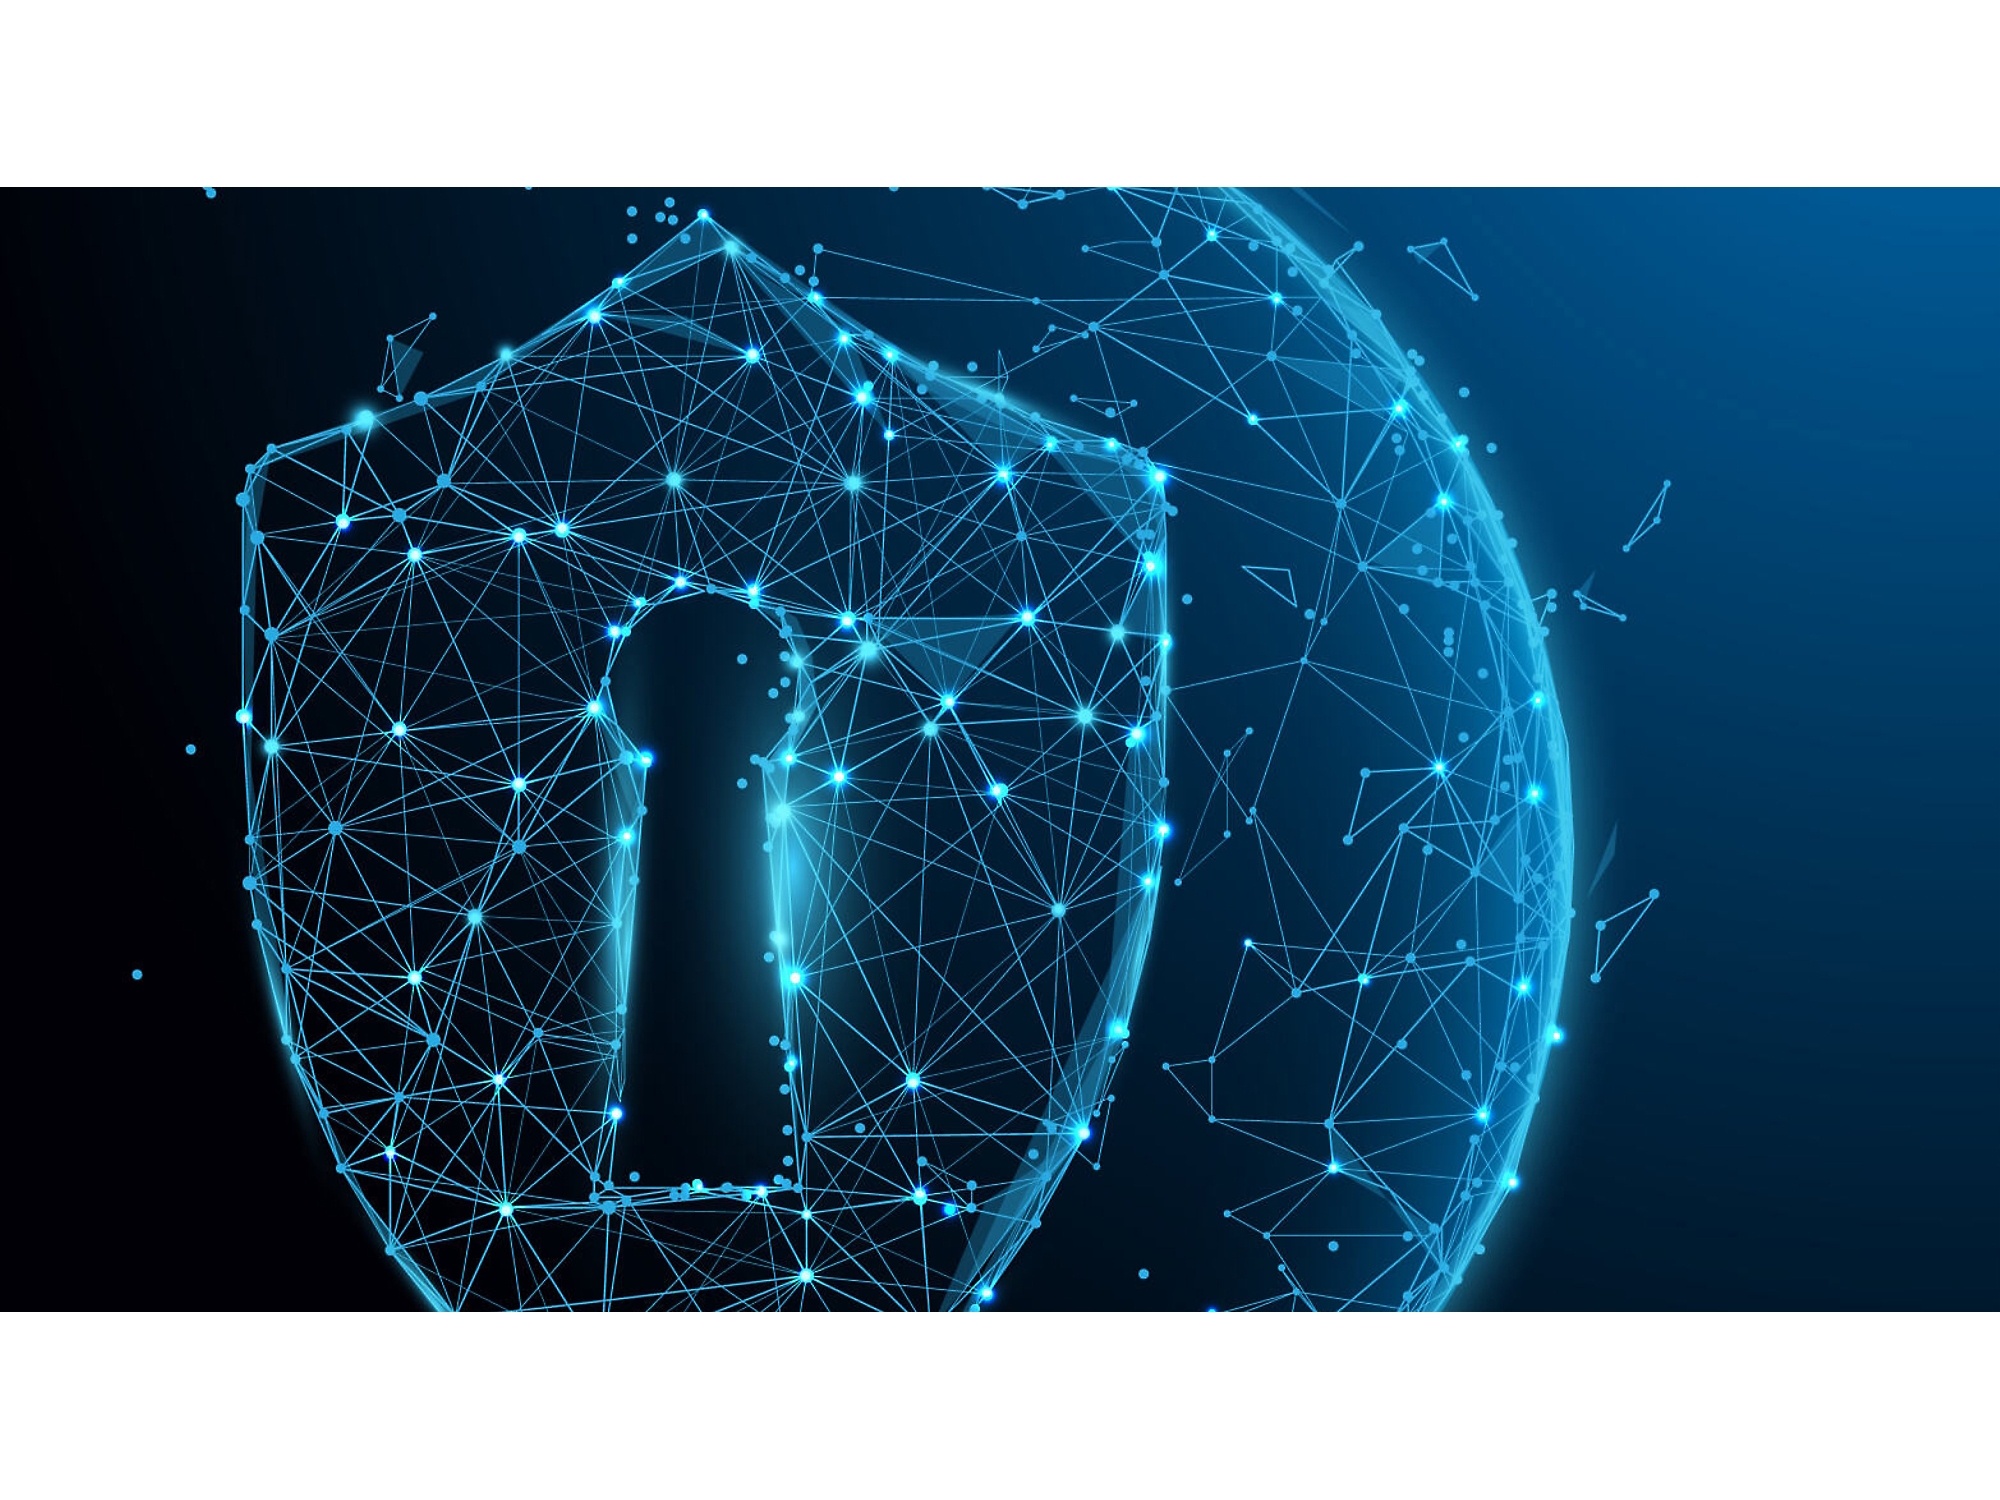 Digitaalne illustratsioon helendavast sinisest sõrestiku kilbist võtmeauguga, mis sümboliseerib küberturvet